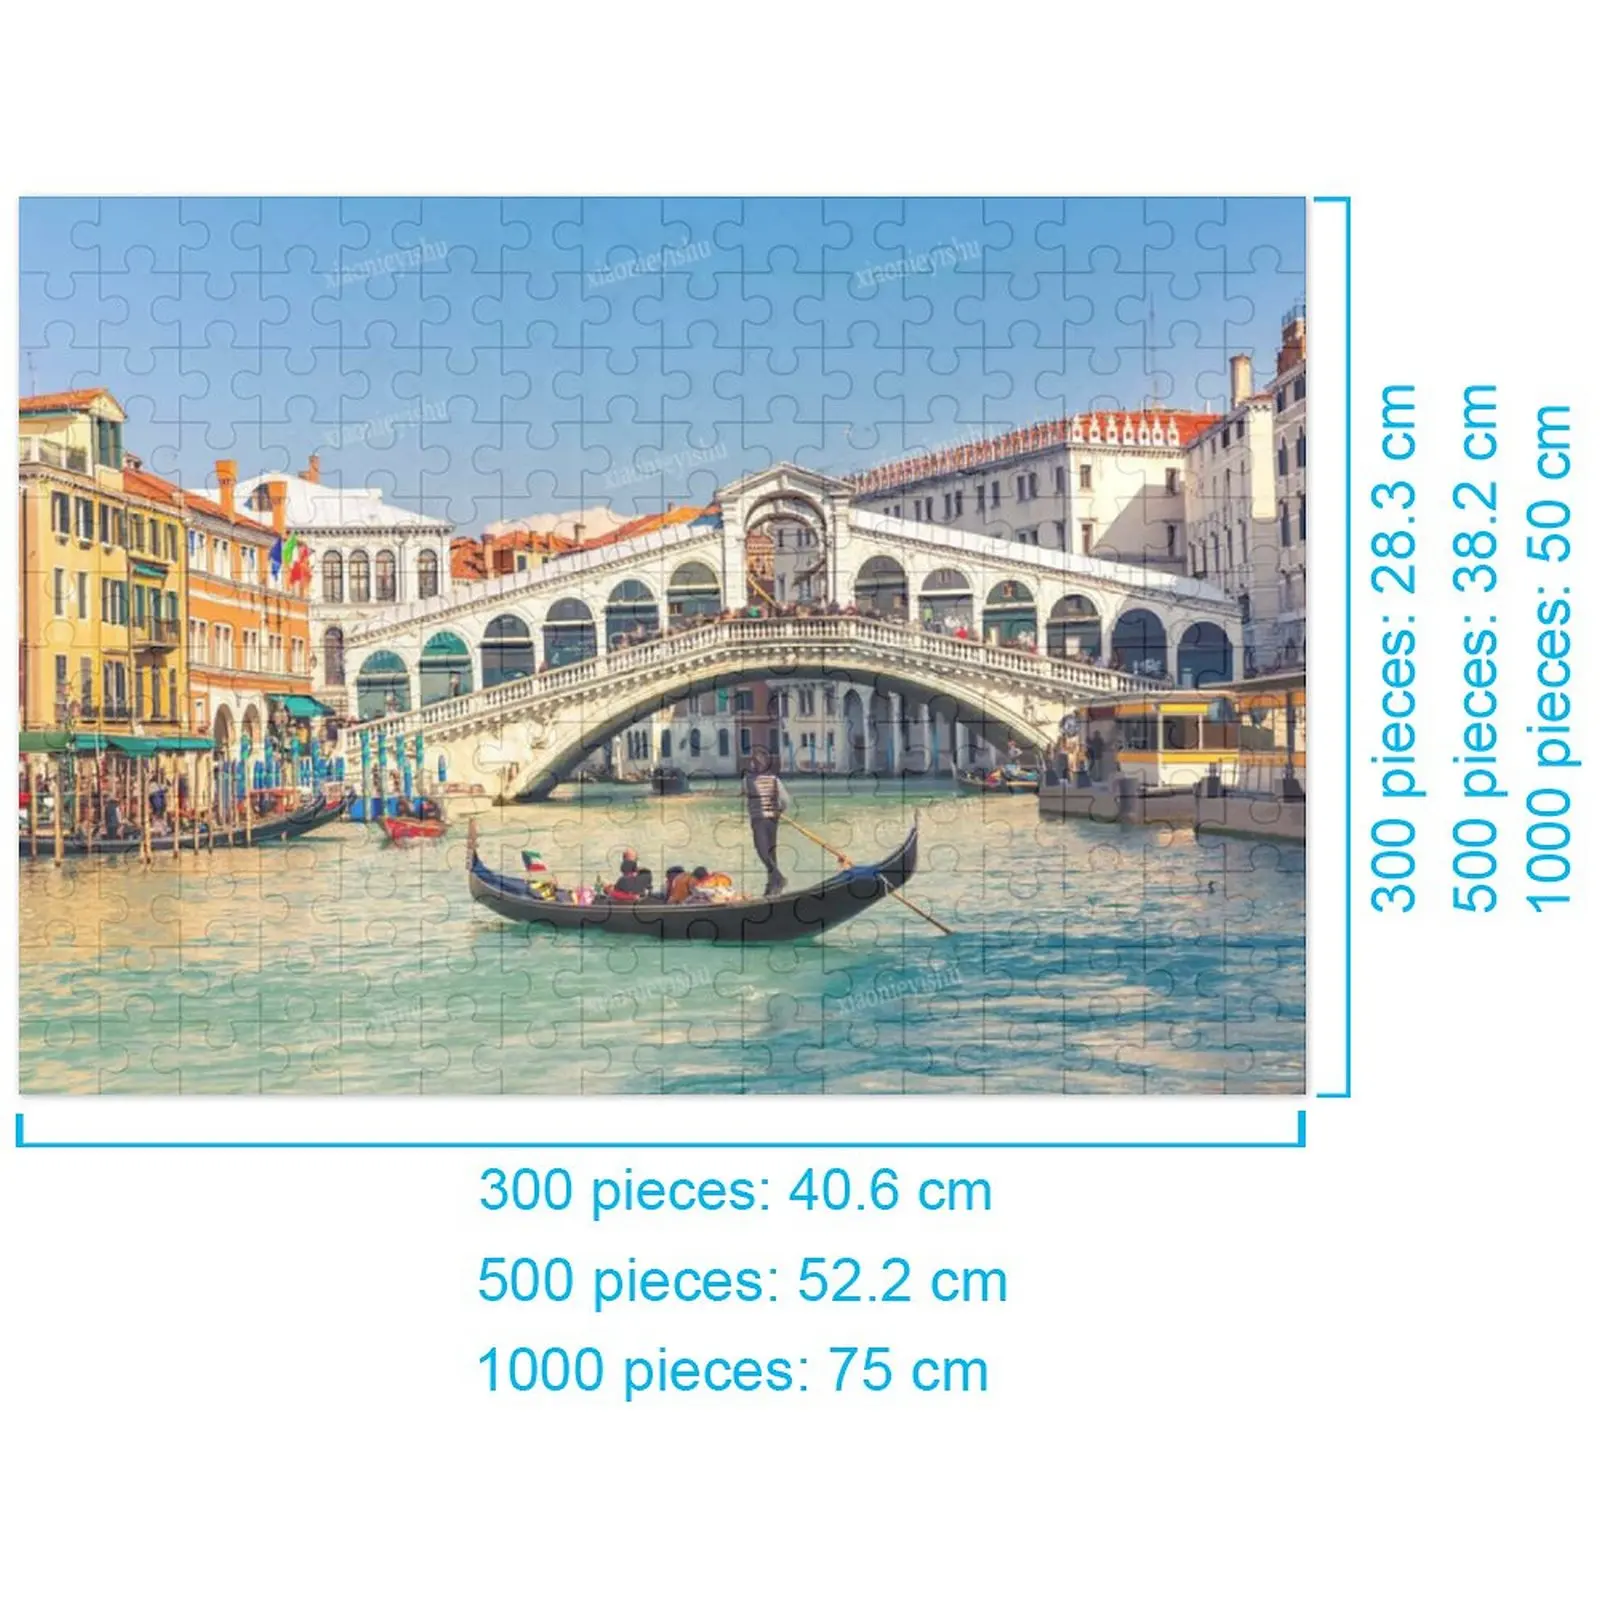 

Деревянный пазл Венеция 300 500 1000 штук пазл Семейная Игра подарок игрушка комиксы сложное украшение стены